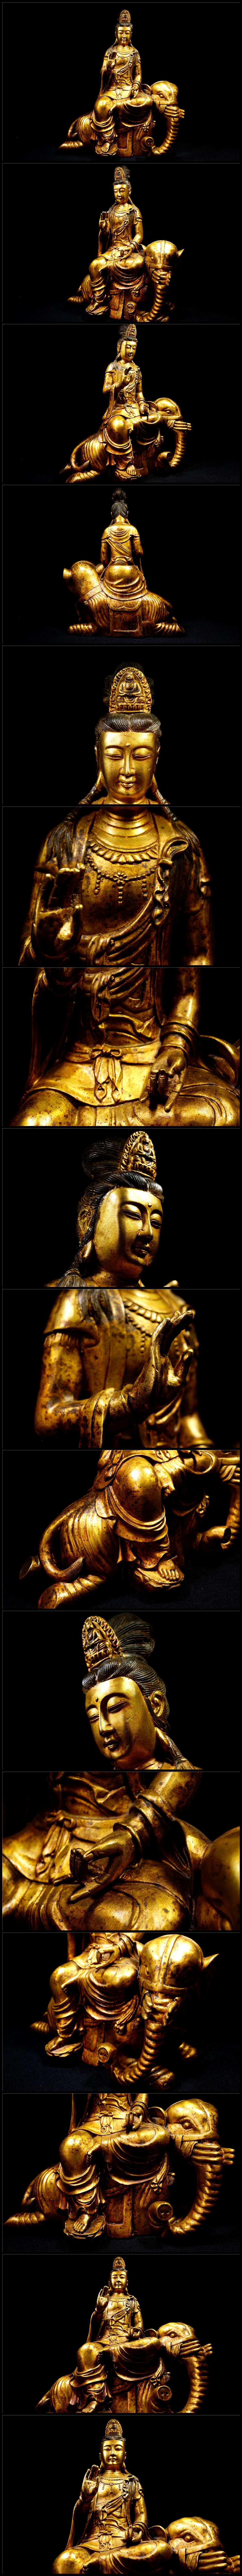 人気新品金銅細工 仏教 大迫力文殊菩造像高彫 鎮宅 開運置物 極上質 高さ約40cm 仏像